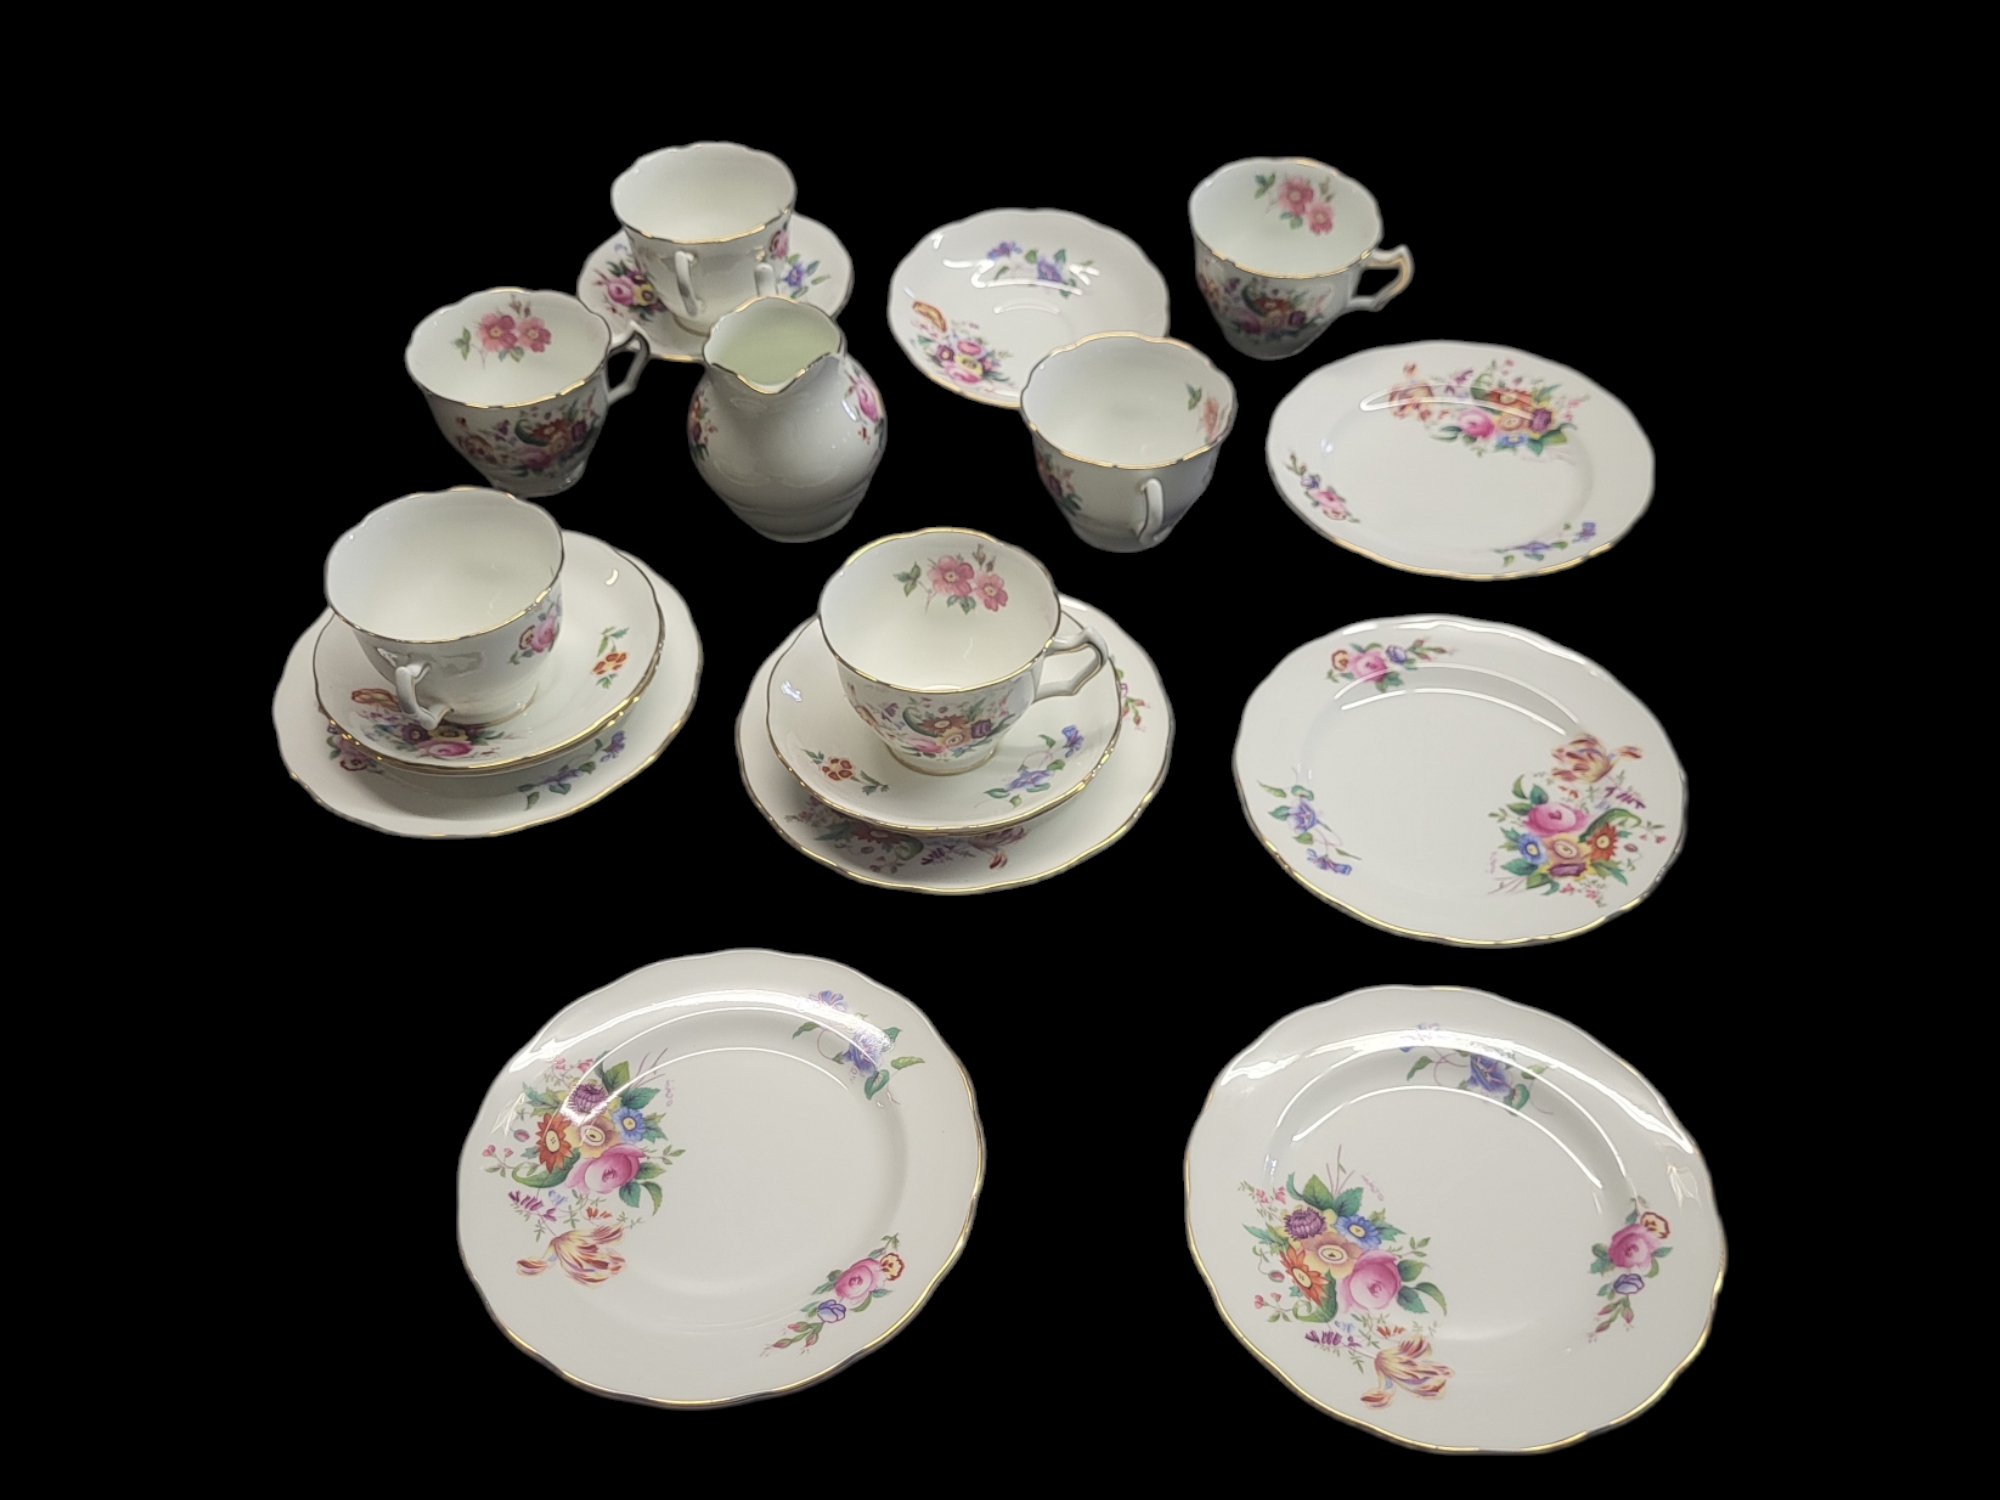 COALPORT, A VINTAGE 'JUNE TIME' PORCELAIN TEA SET Comprising six cups, six saucers, six side